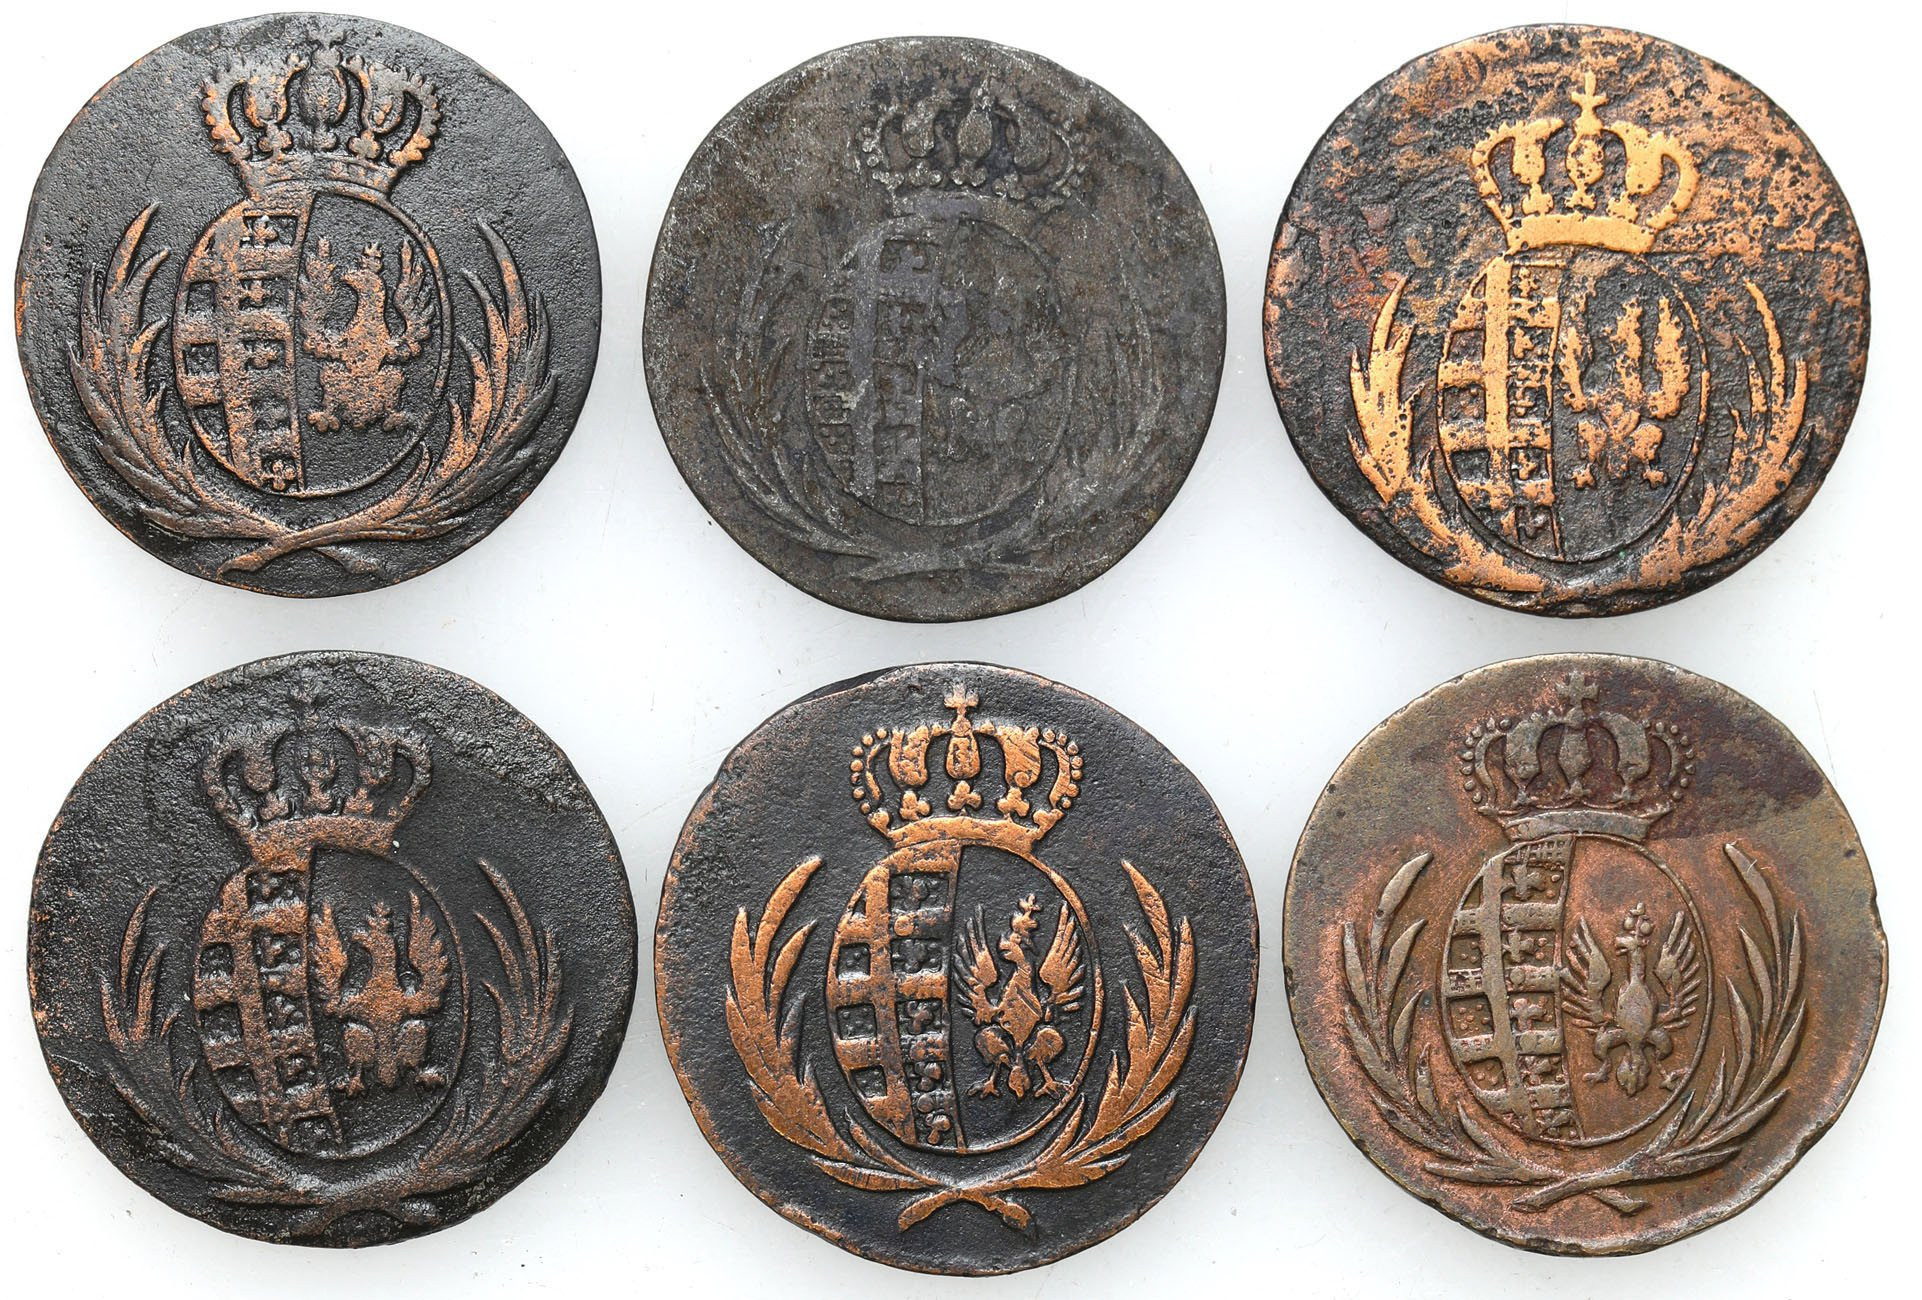 Księstwo Warszawskie. 1 grosz 1811-1814 i 5 groszy 1811, Warszawa, zestaw 6 monet 